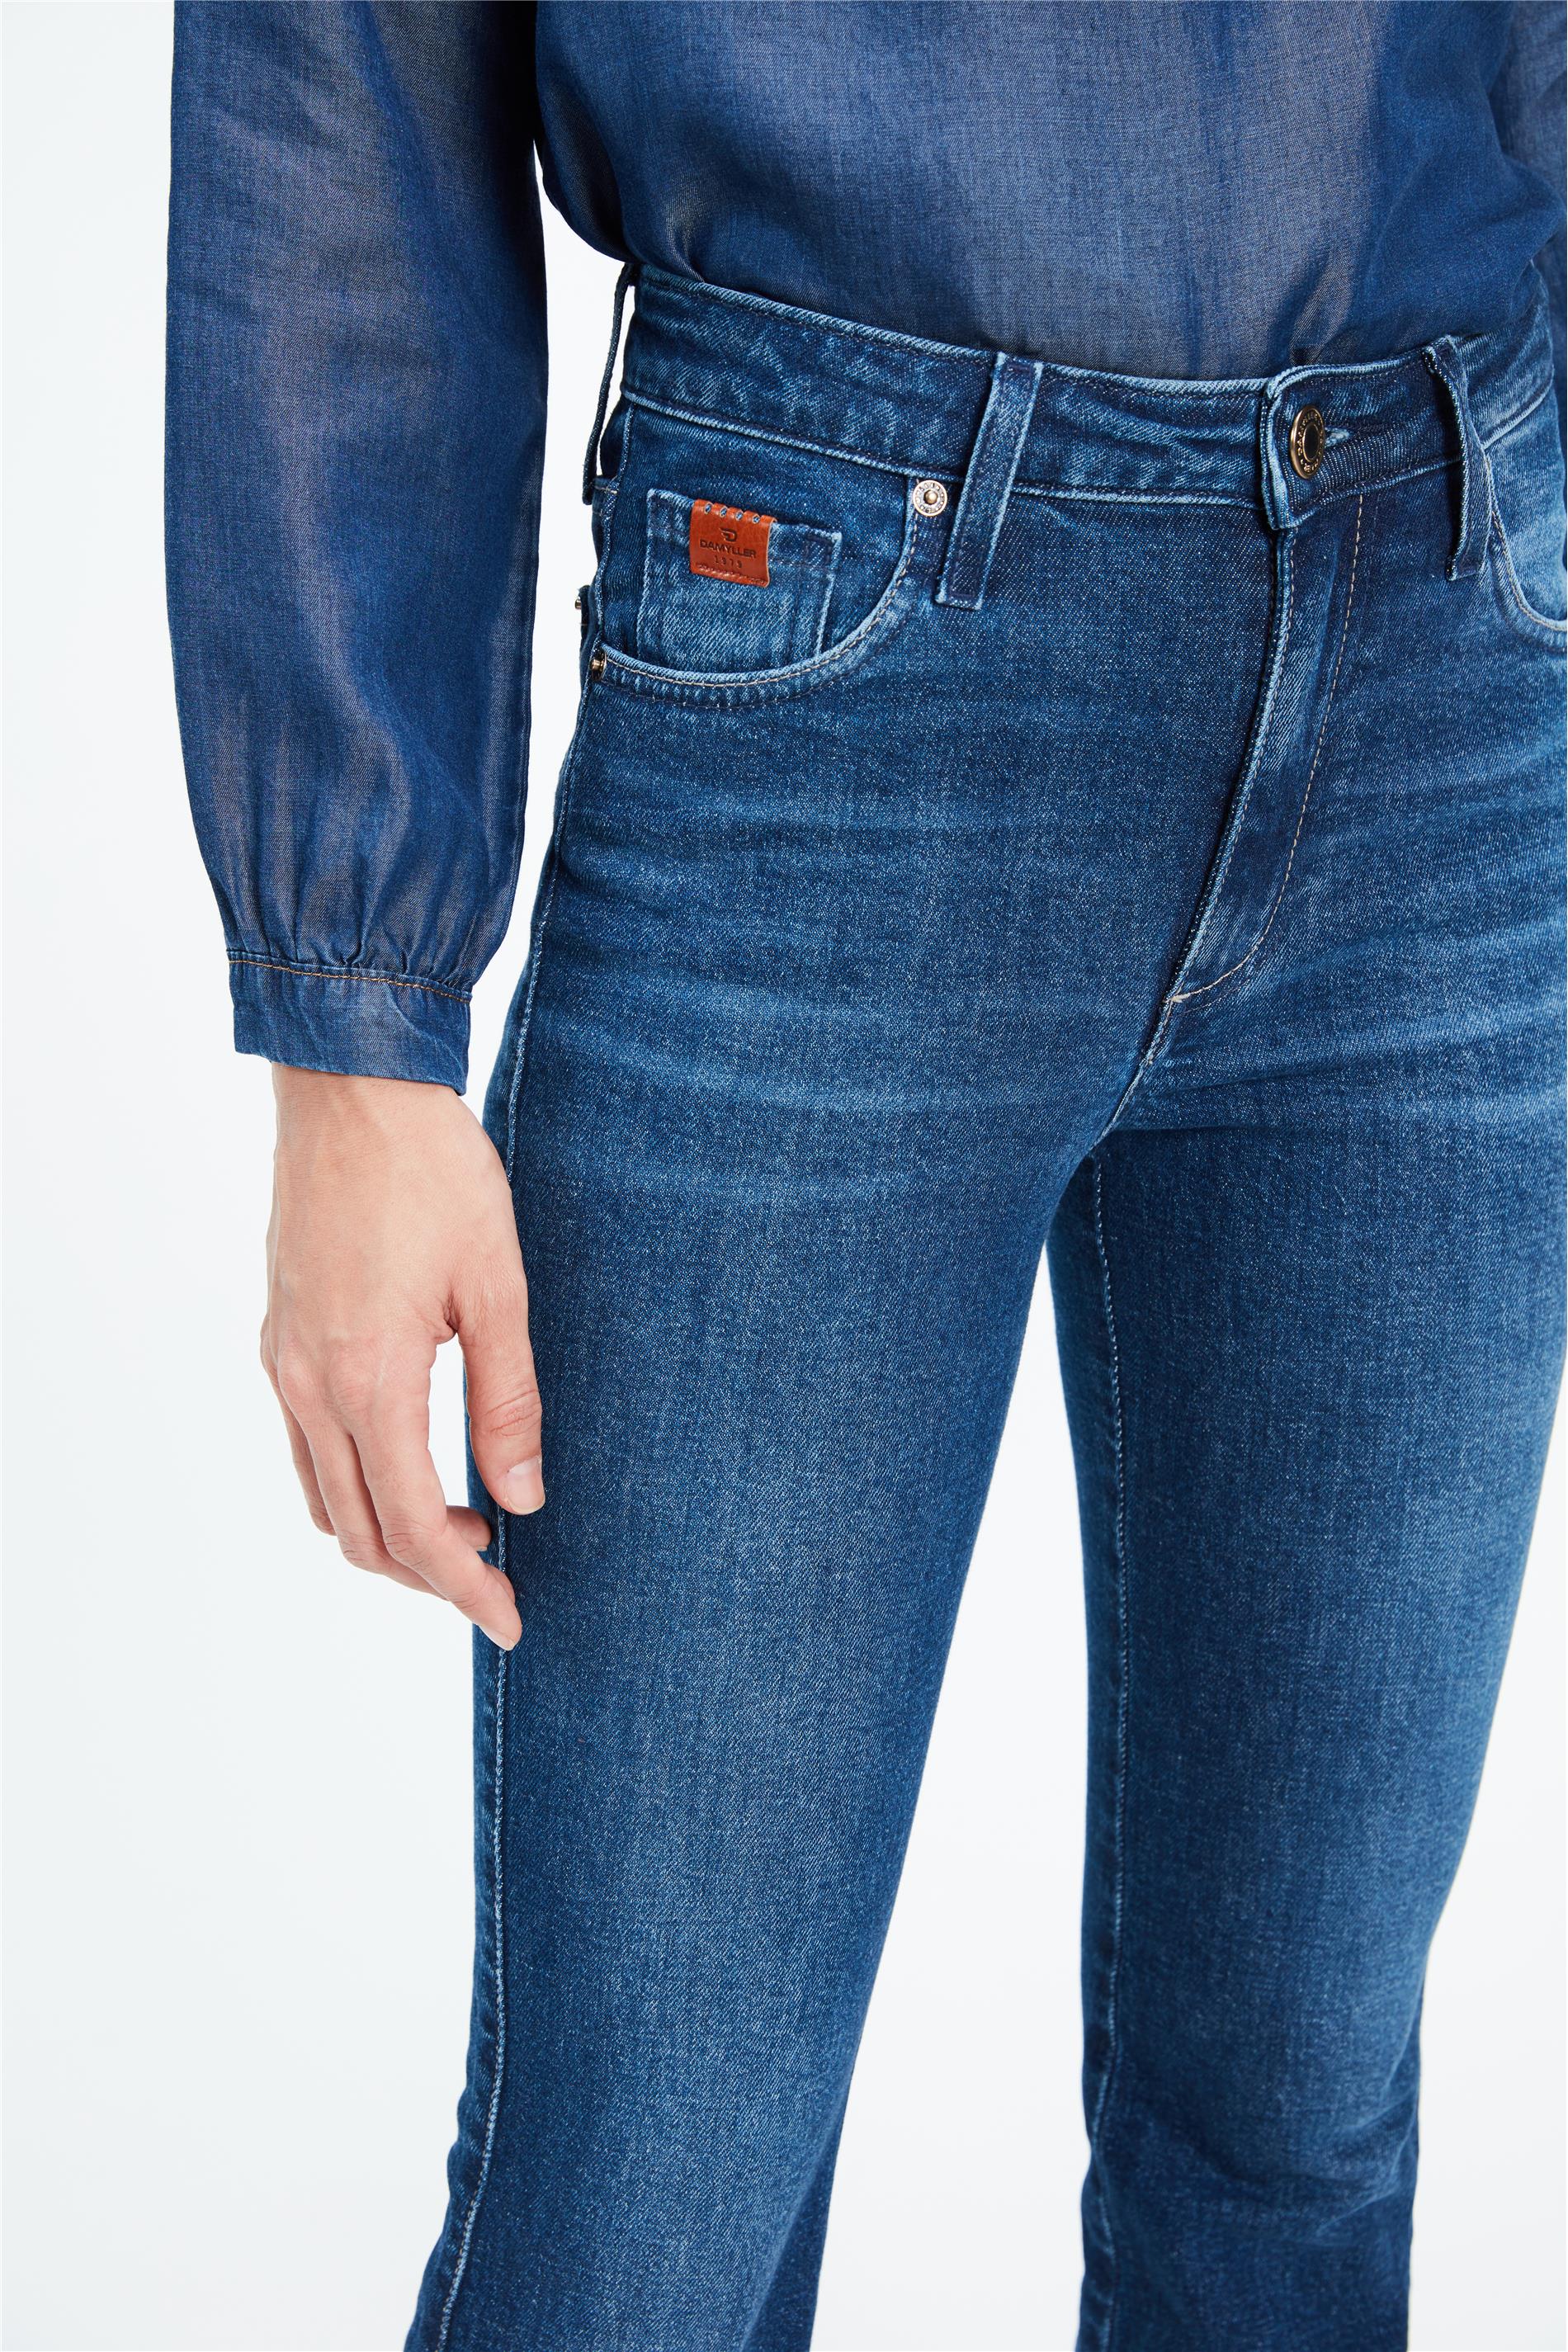 calça jeans aberta na cintura